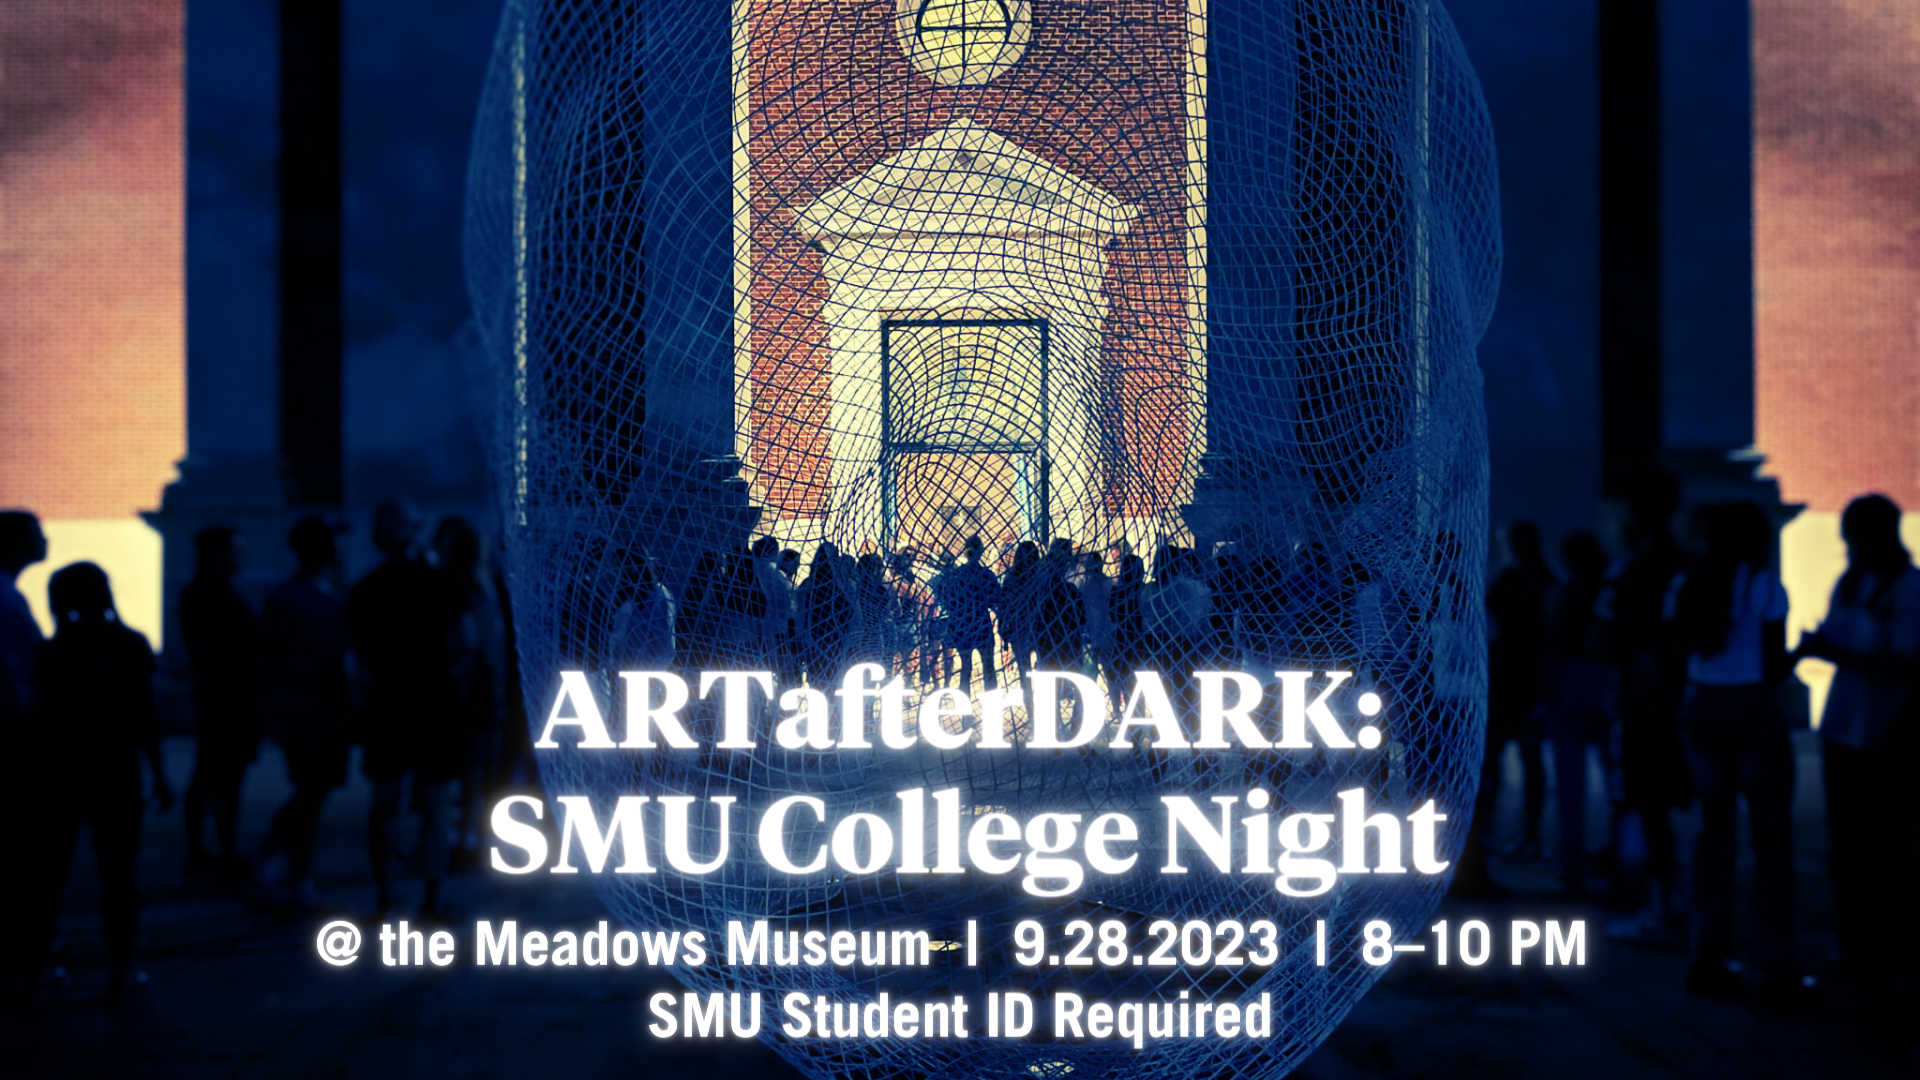 ARTafterDARK SMU College Night poster